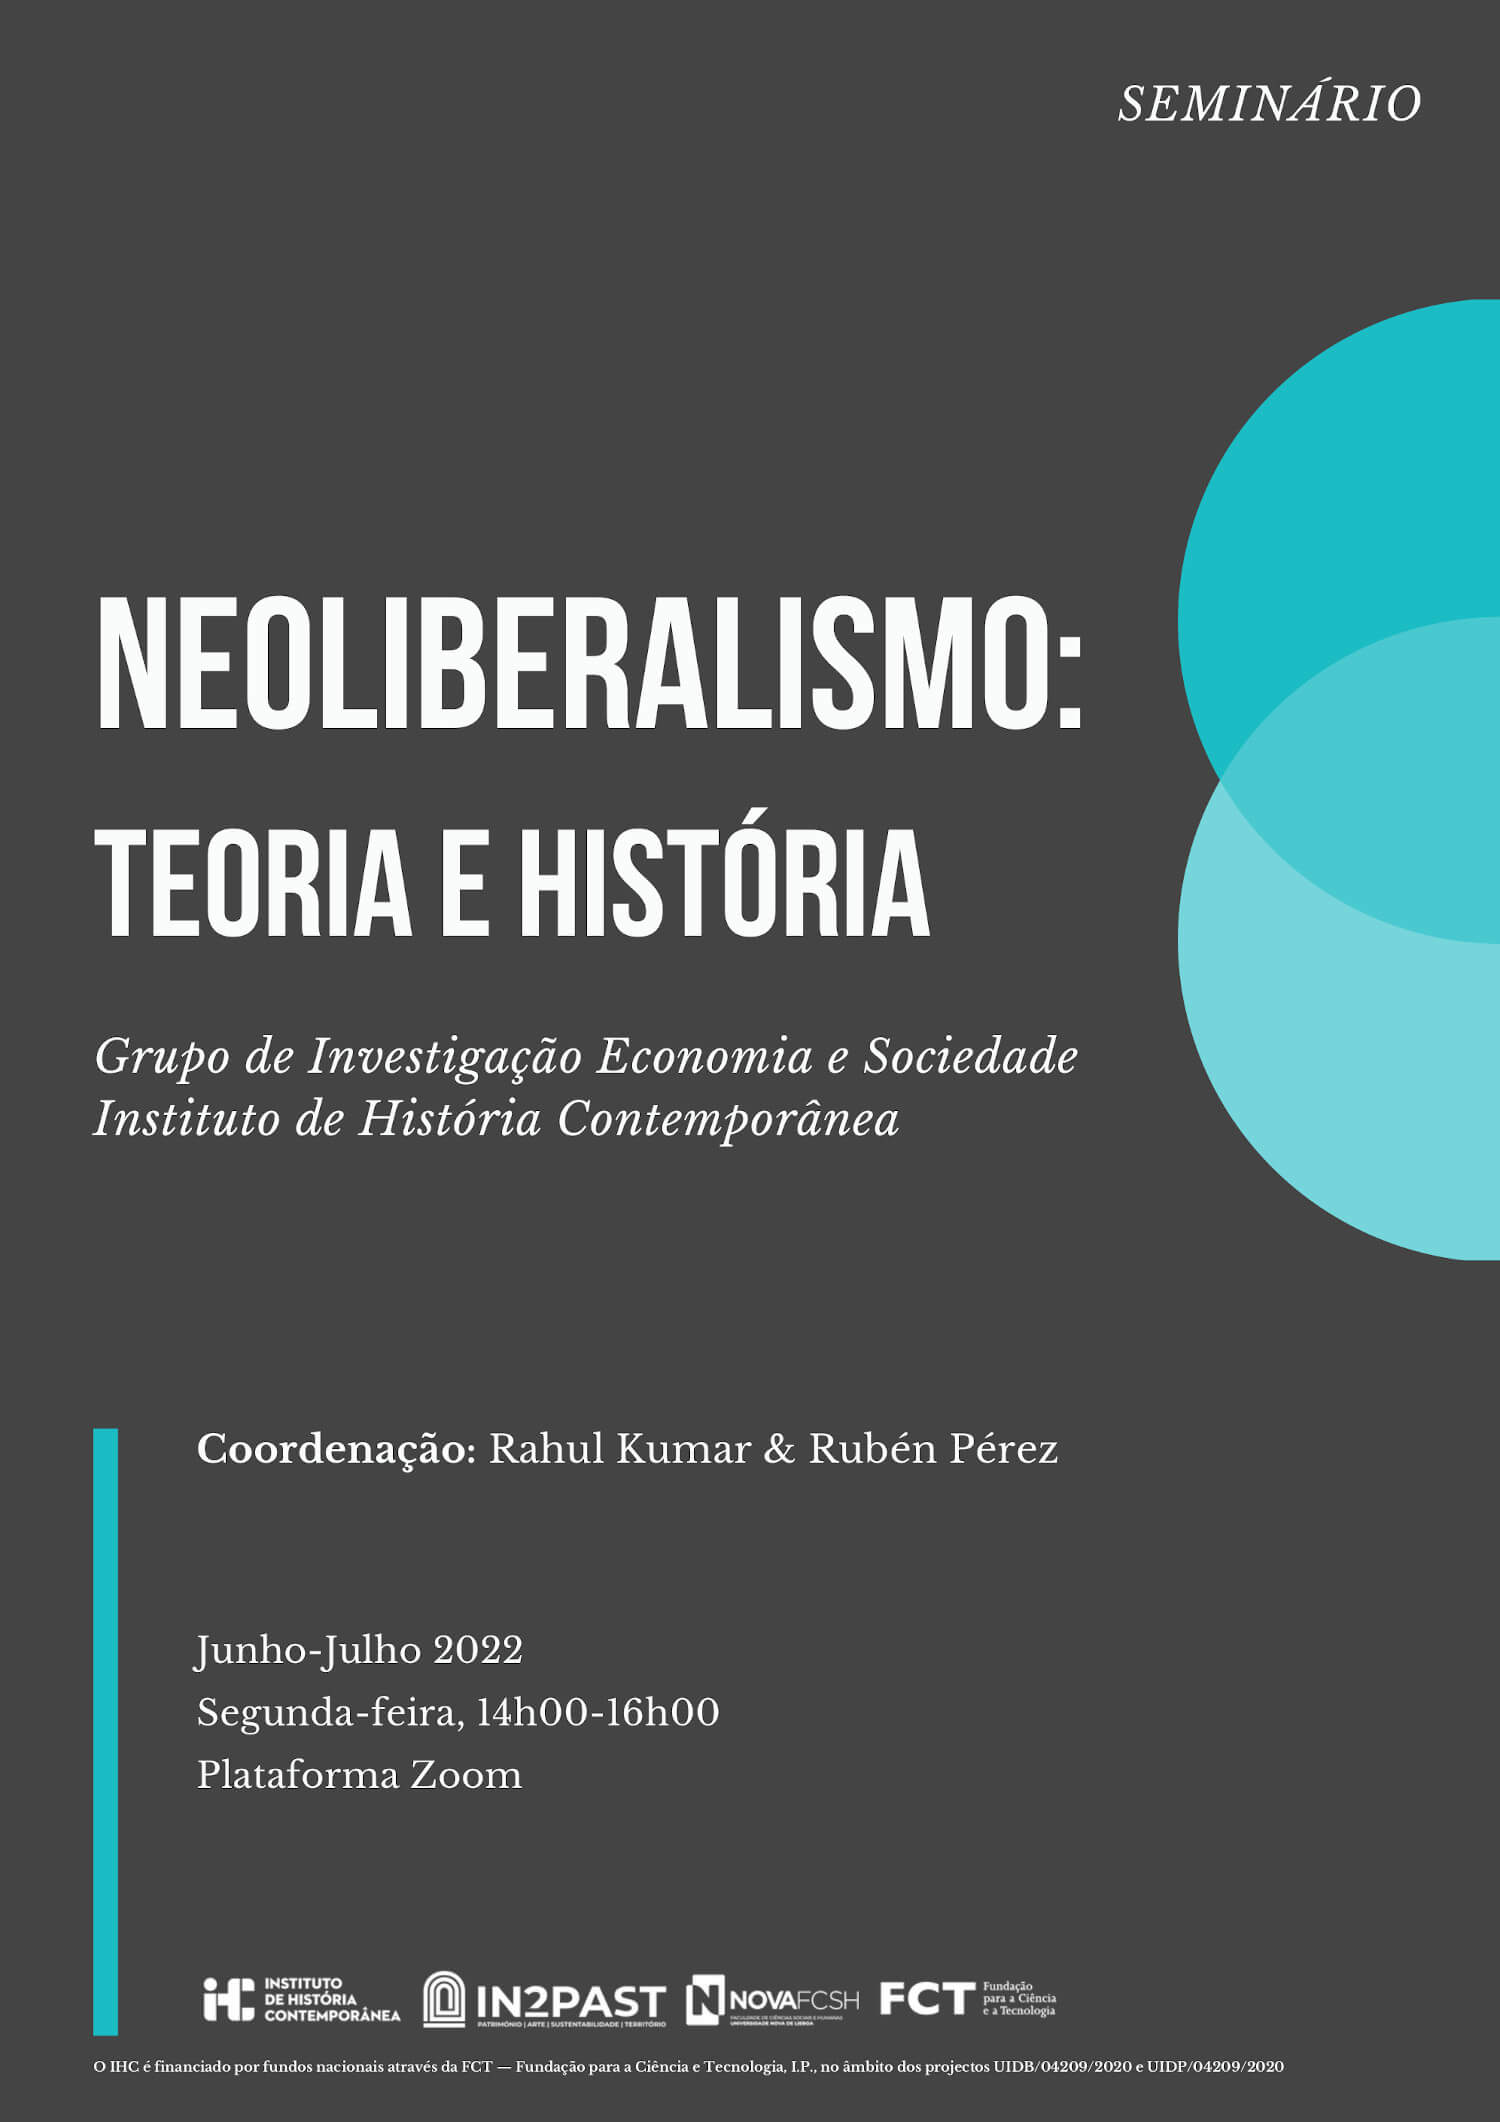 Cartaz do seminário "Neoliberalismo: Teoria e História". Organizado pelo Grupo de Investigação Economia e Sociedade do Instituto de História Contemporânea. Junho-Junho 2022, Segunda-feira, 14h às 16h, via Zoom.